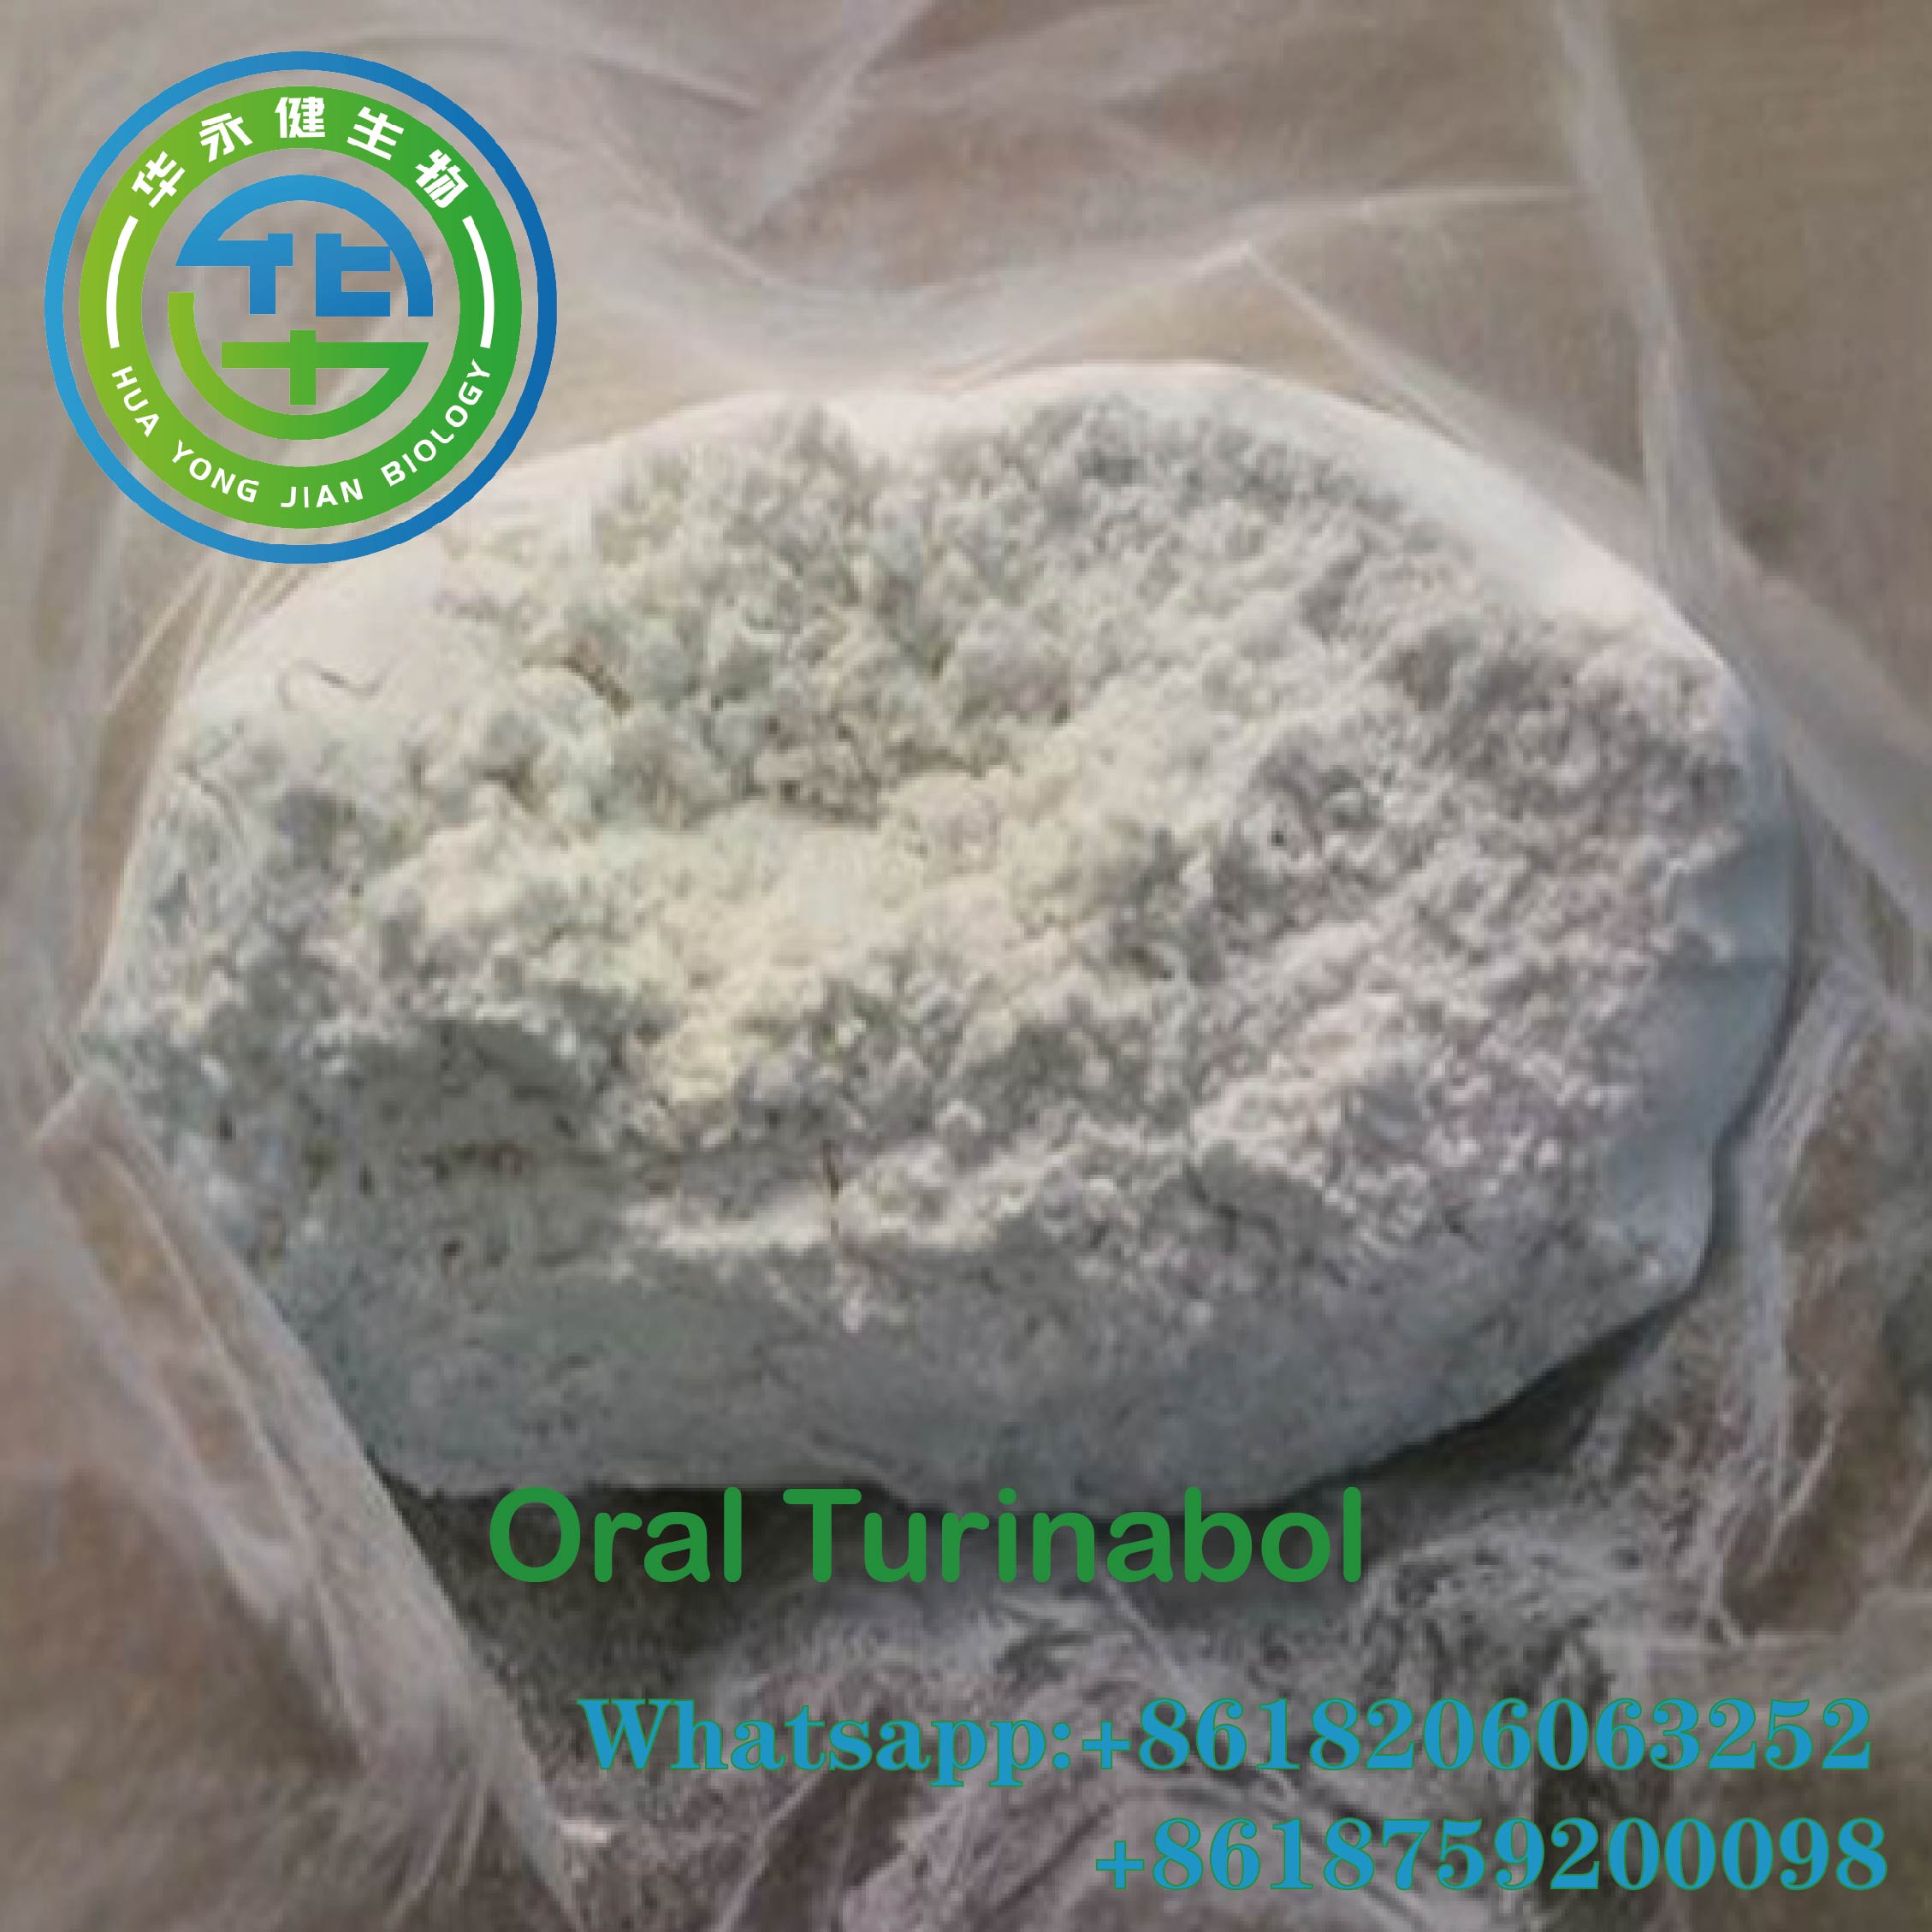 4 - Chlorodehydromethyl Testosterone Raw Powder Oral Turinabol for Body Building CAS: 2446-23-3